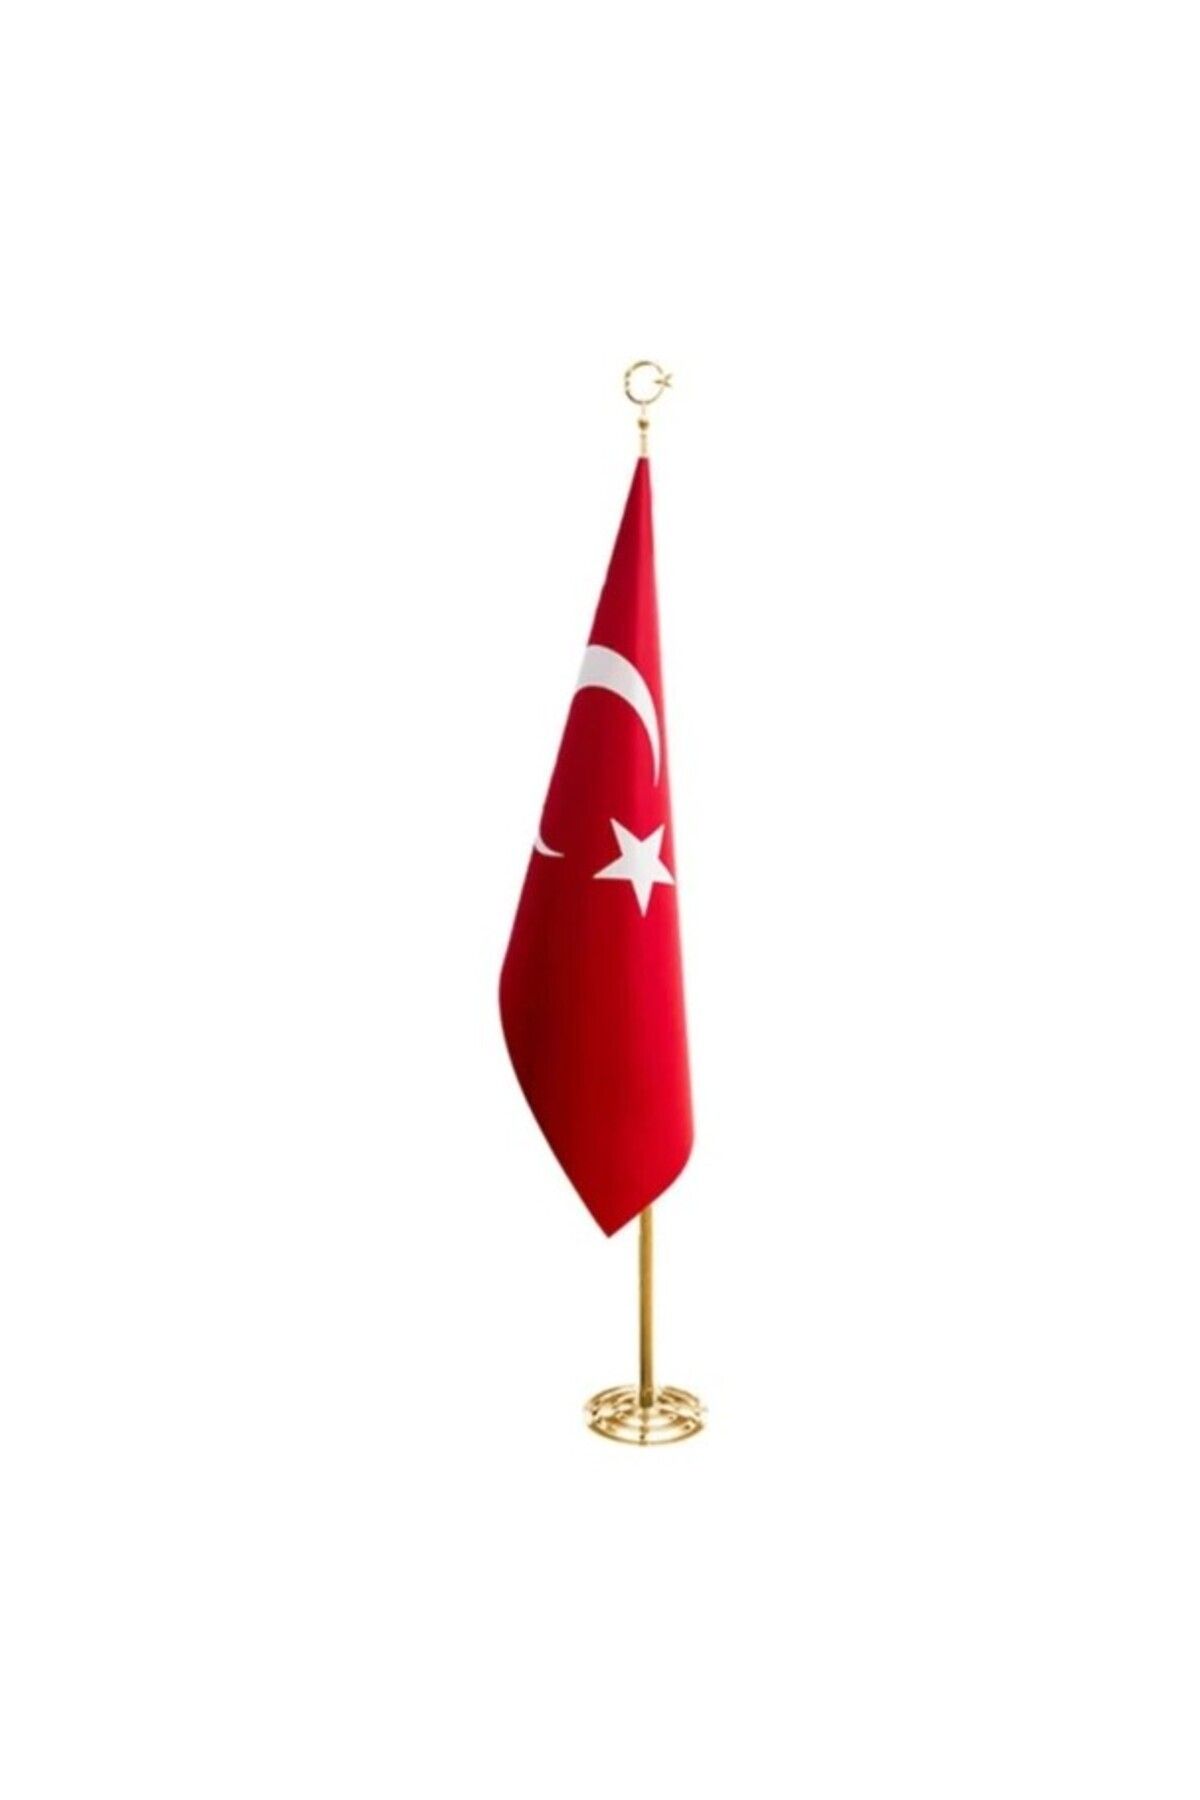 ARGIN ARGIN BAYRAK Ofis Makam Bayrağı, Makam Türk Bayrağı , Sarı Direkli Makam Türk Bayrağı , Sarı direkli